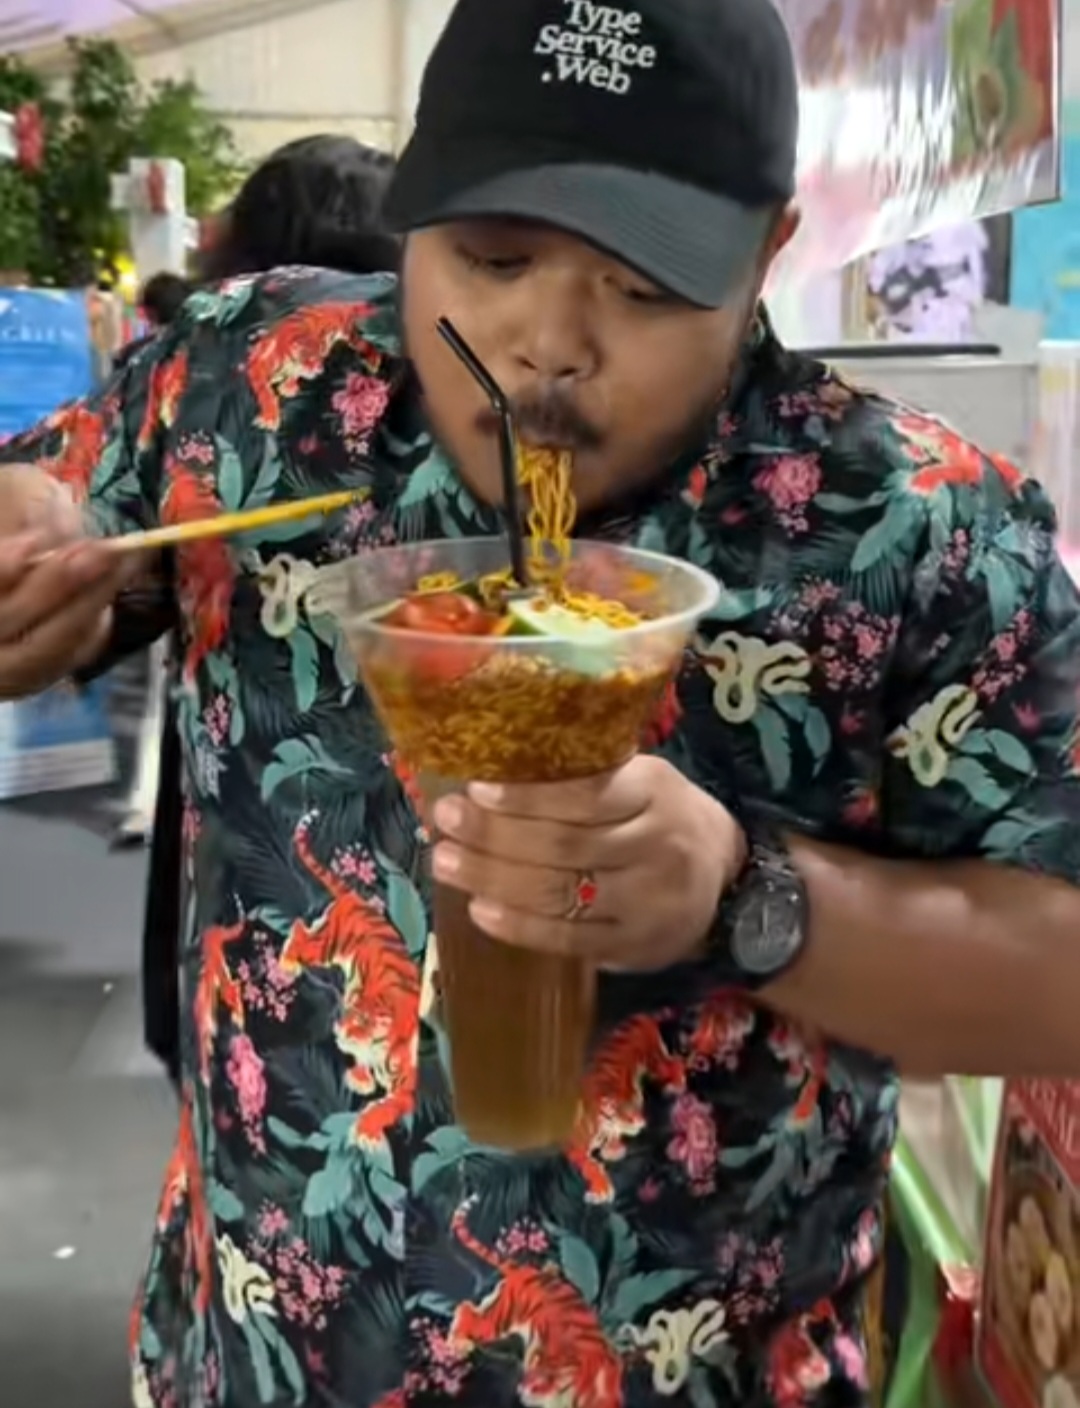 Menemukan Jajanan Menarik di Festival Tabut Ala Food Vlogger, Khusus di Tenda Ekraf